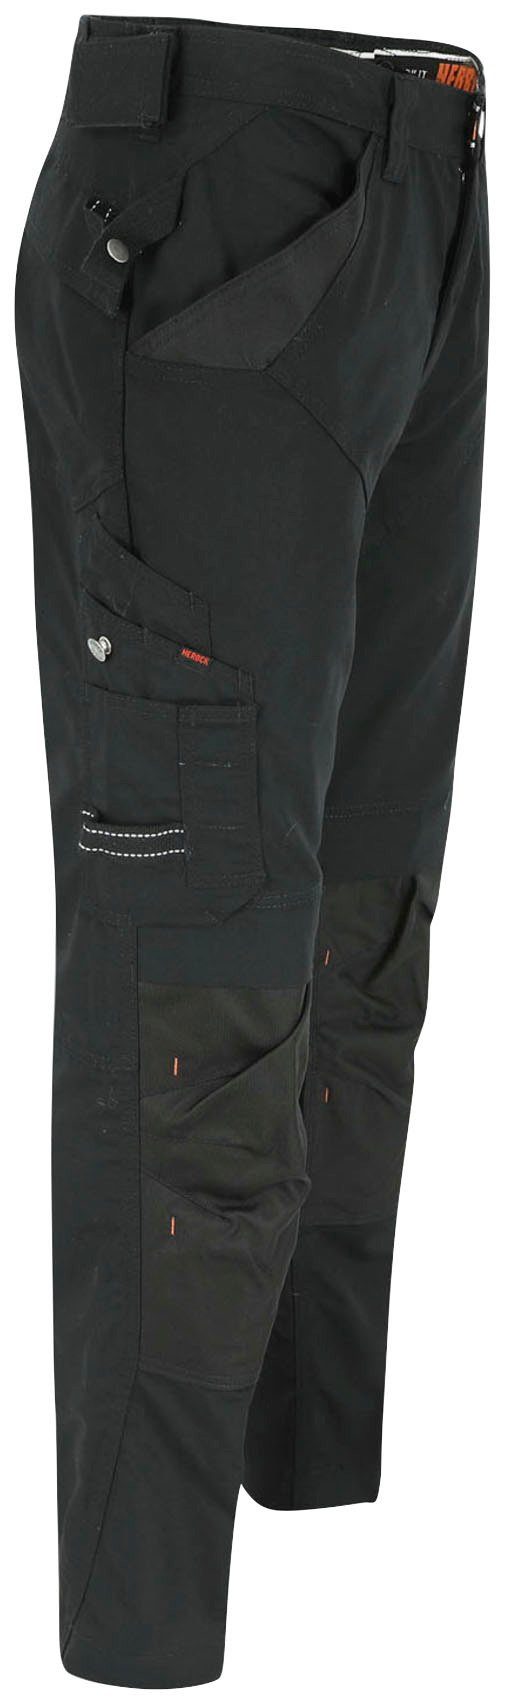 Bund APOLLO Herock bequem Arbeitshose - schwarz Taschen - leicht - Regelbarer Wasserabweisend 8 SHORTLEG & HOSE